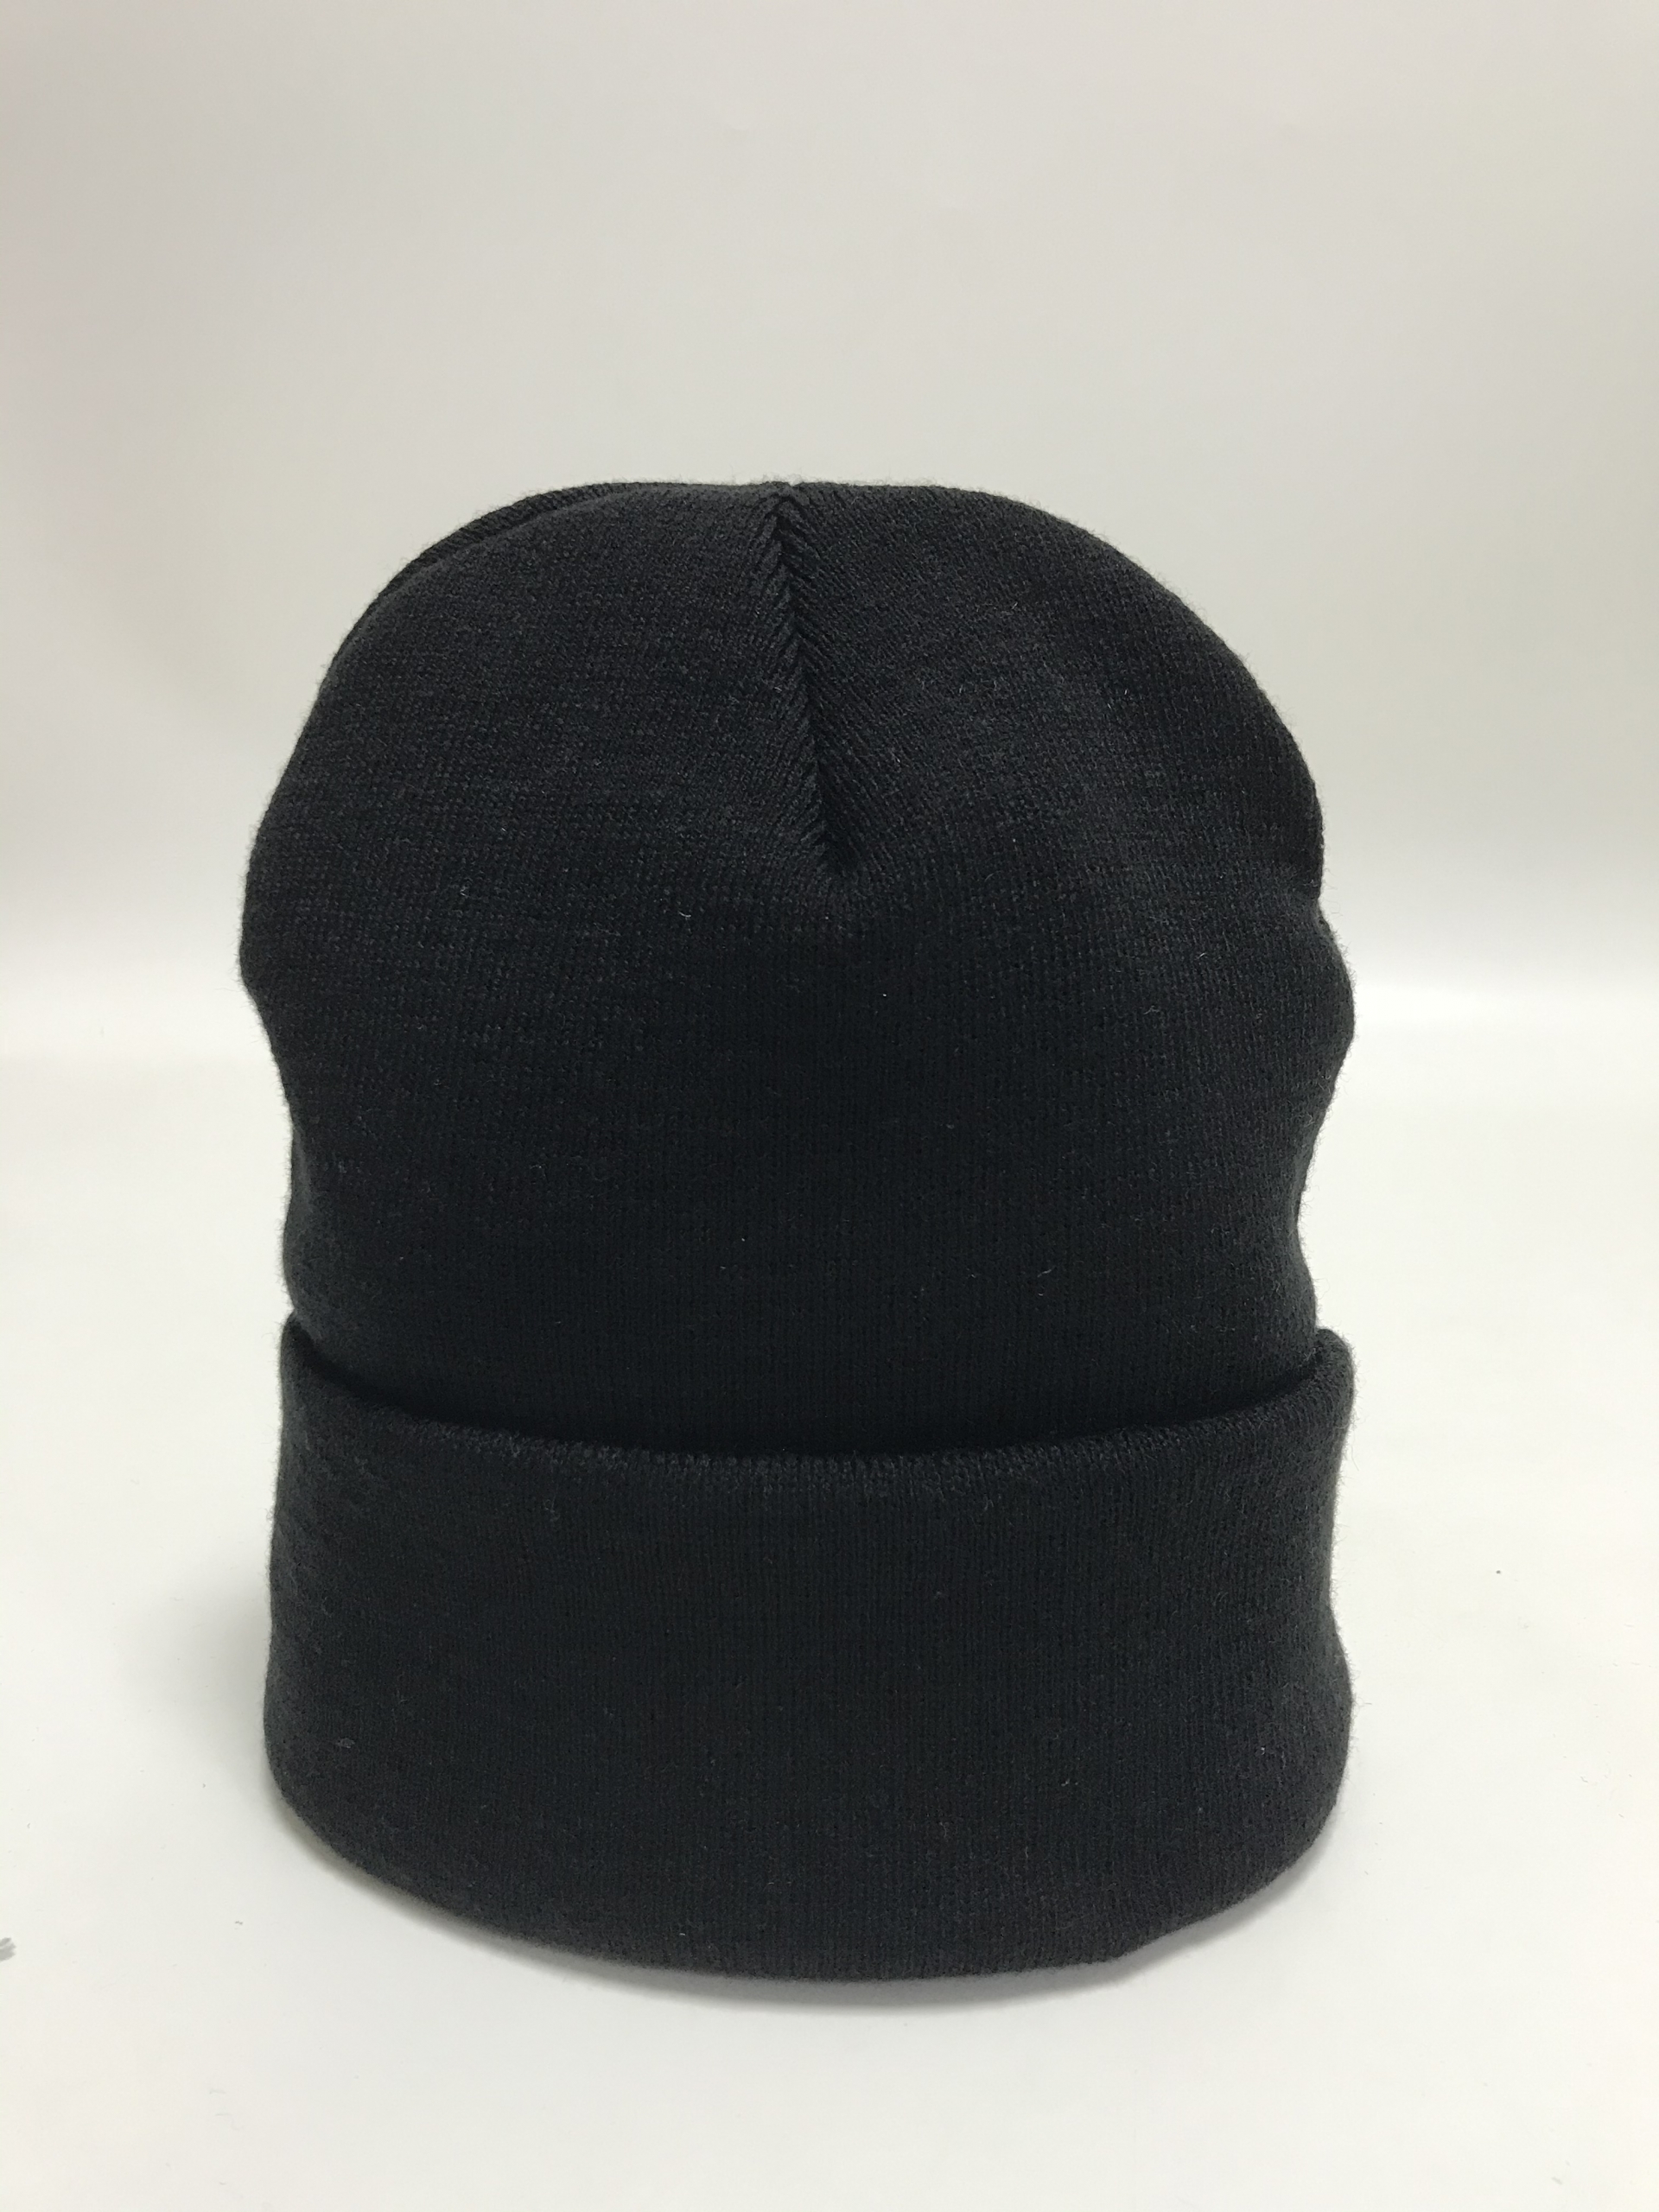 Black Beanie Hat by Vox Gentè - Vox Gentè